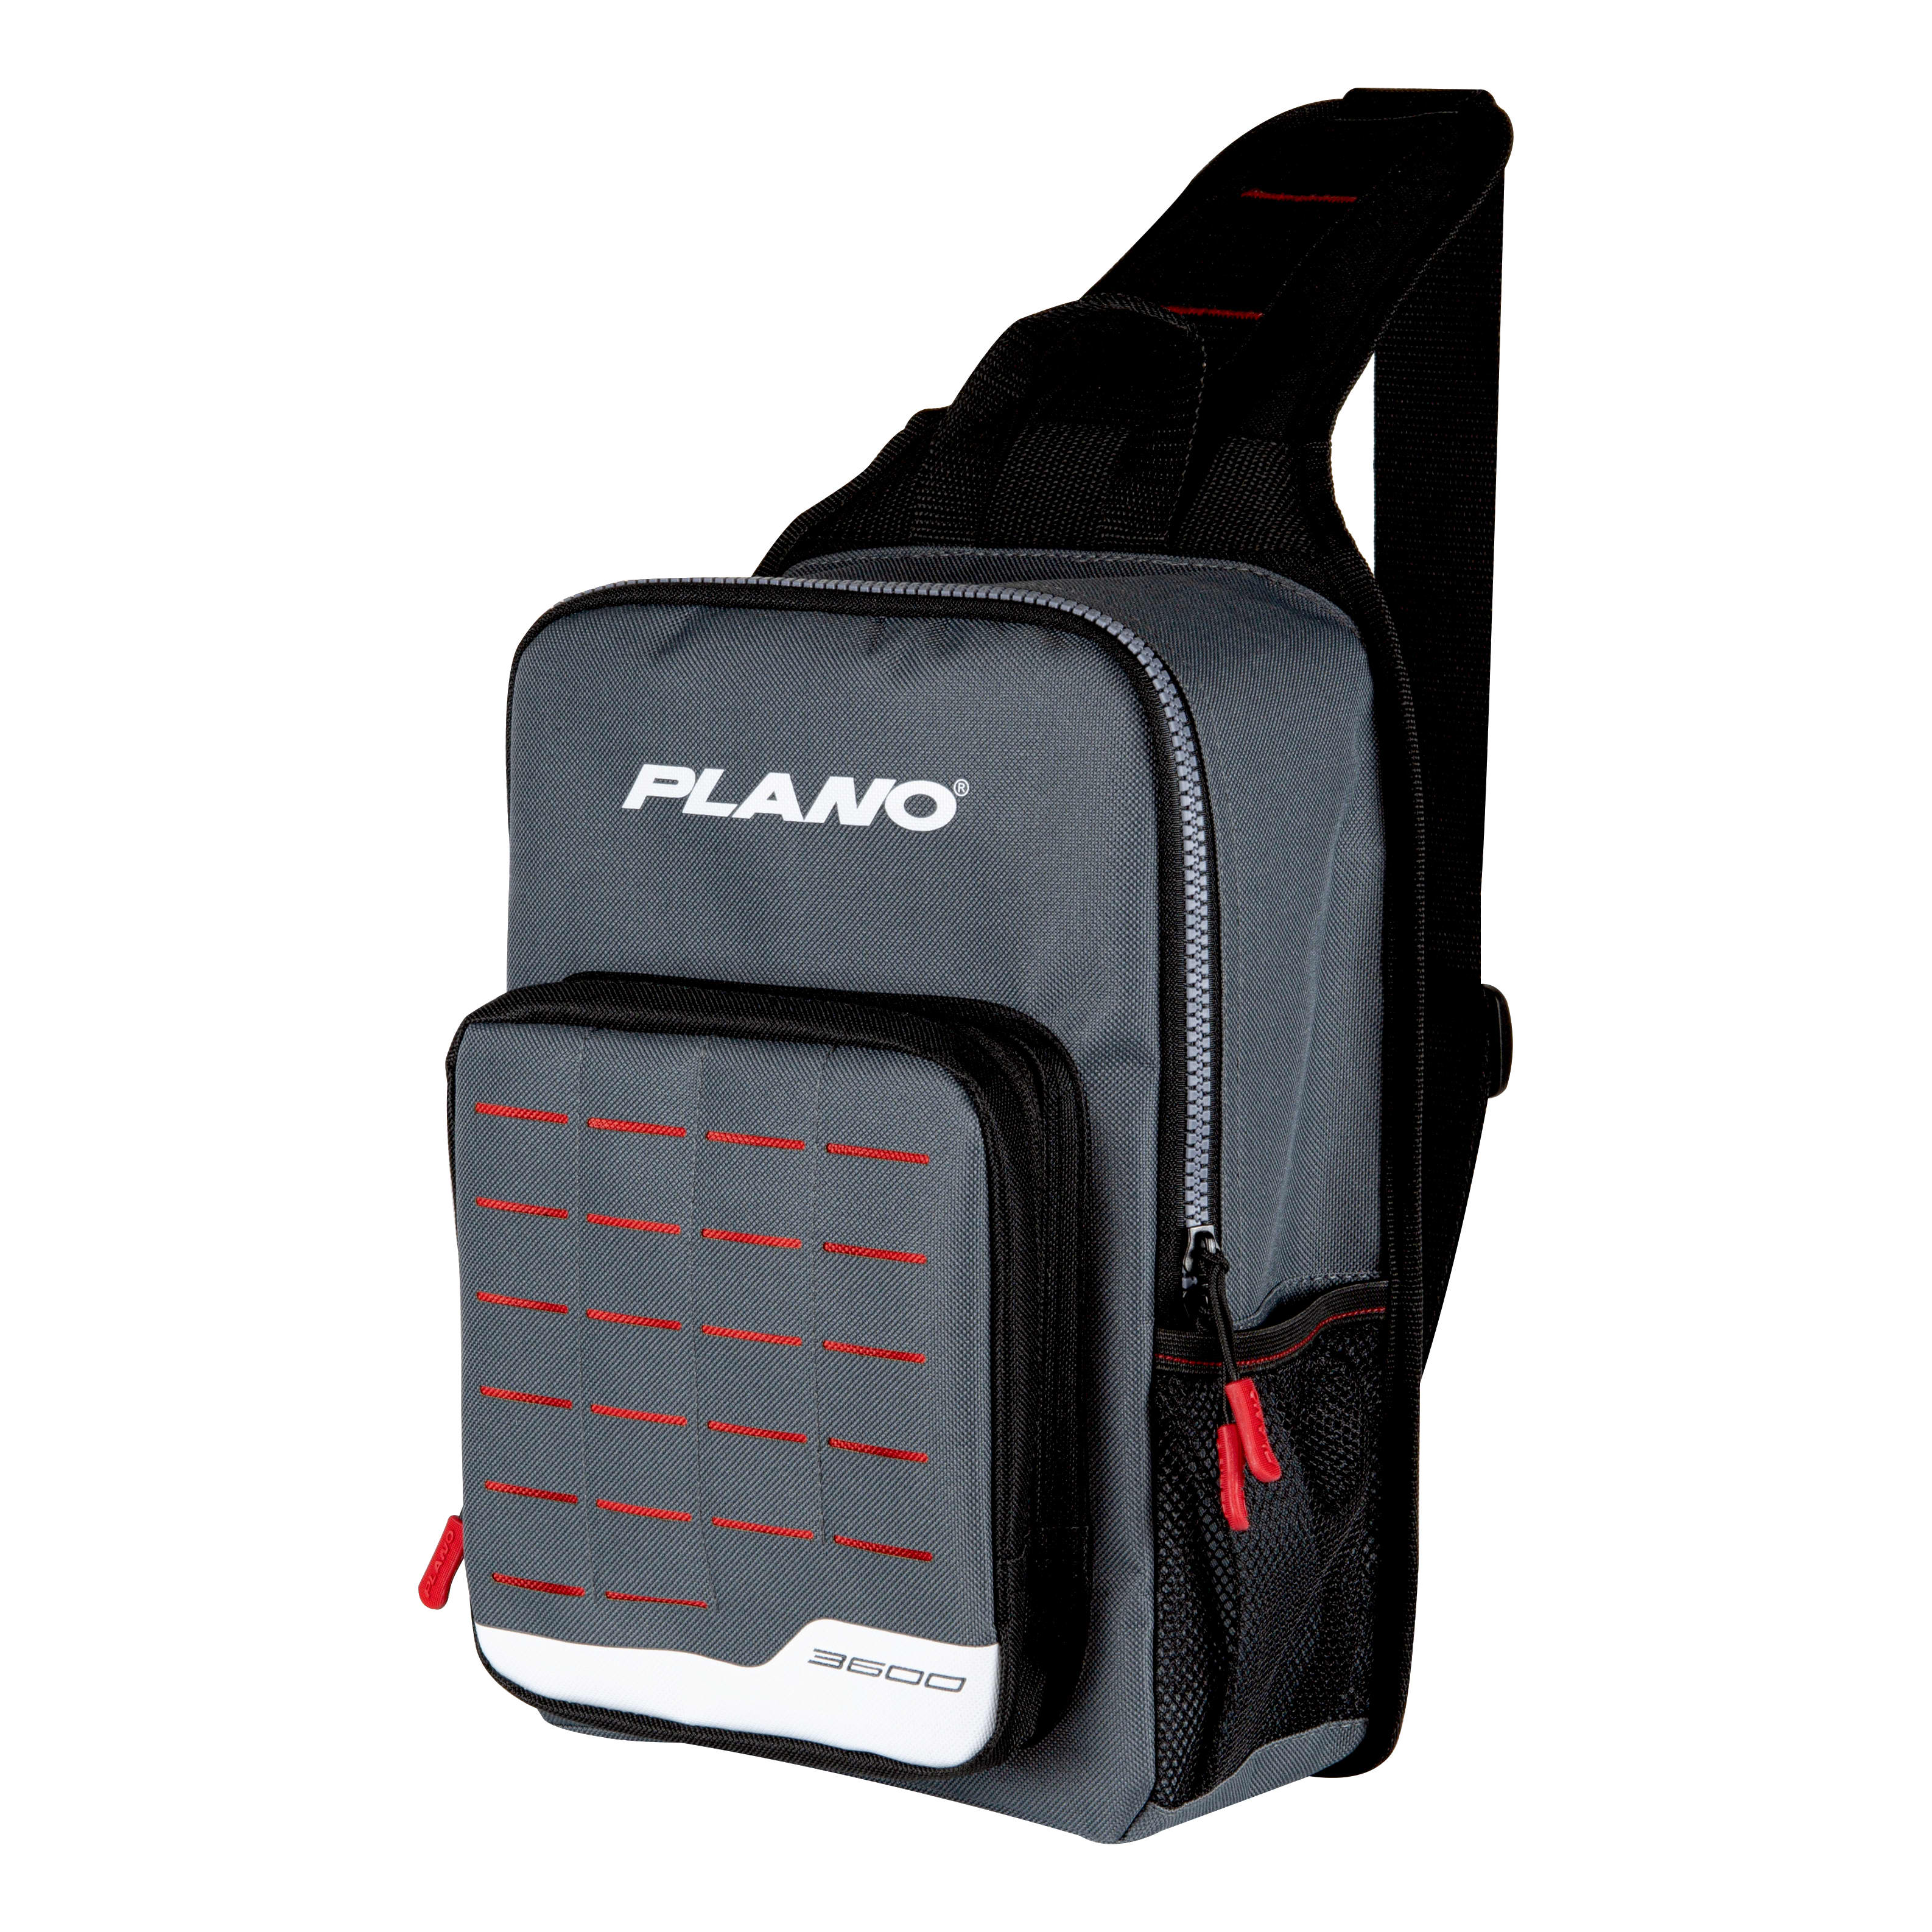 Plano® Weekend Series Bags